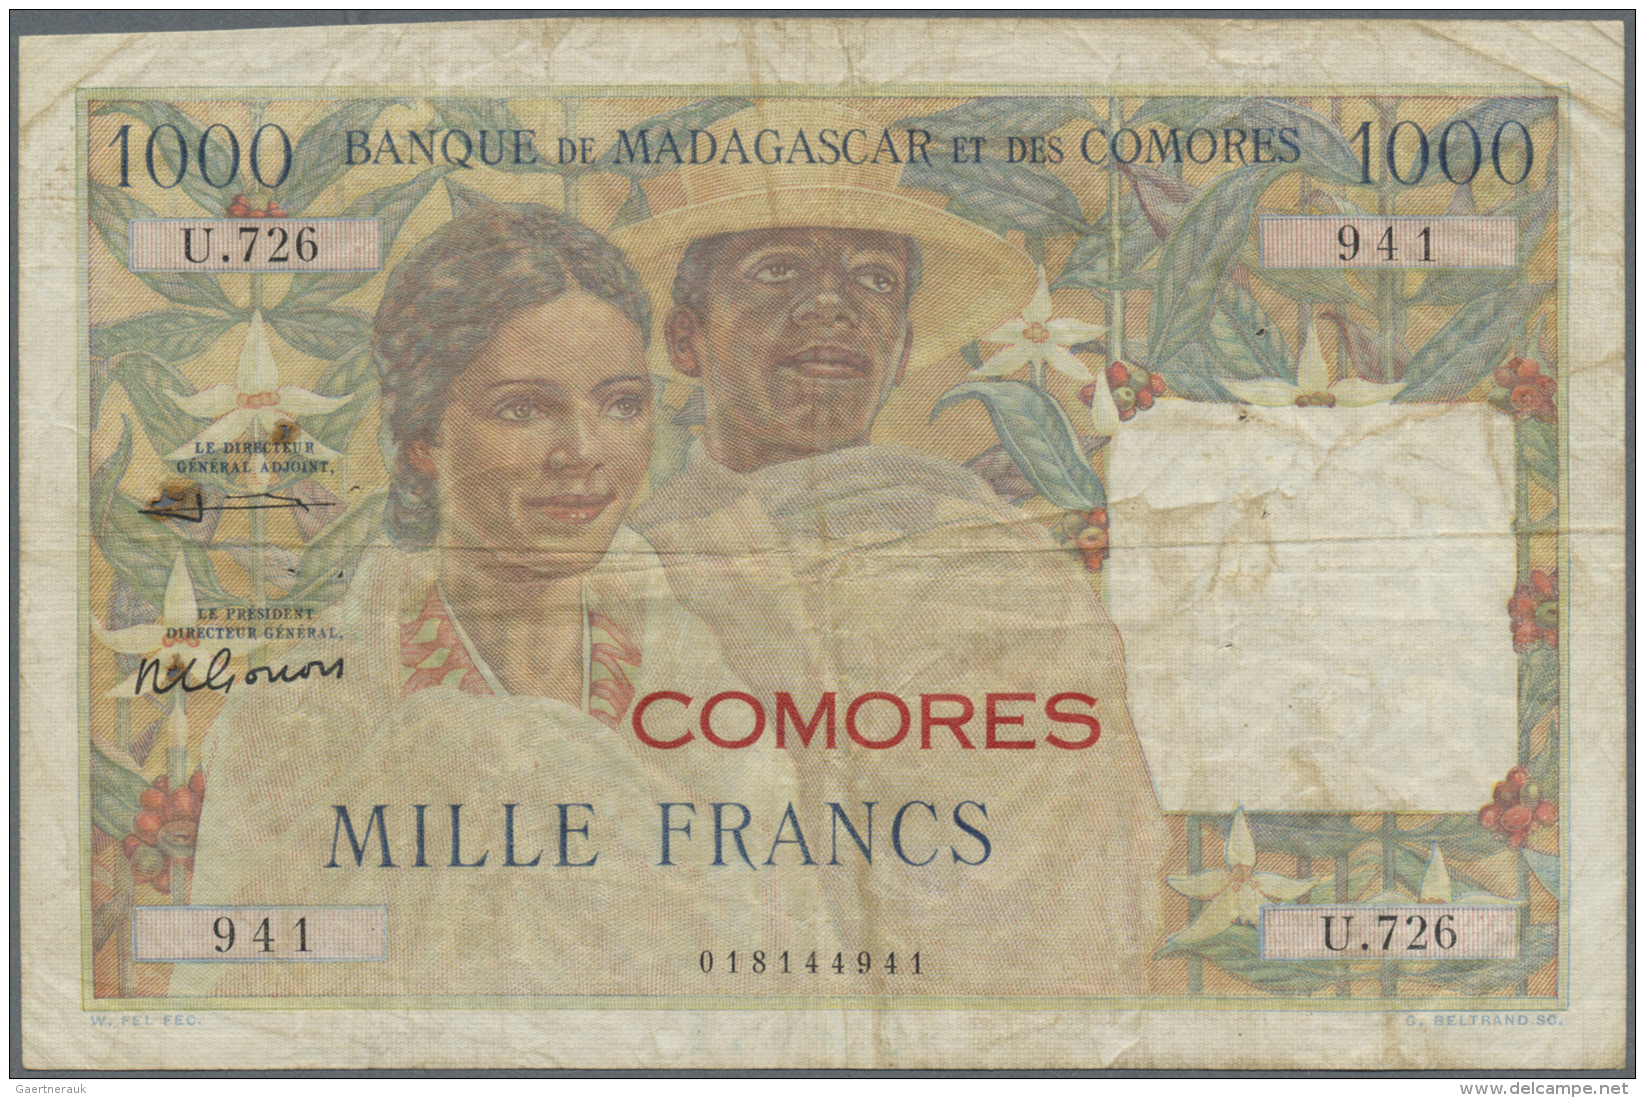 Comoros / Komoren: 1000 Francs ND(1960) P. 5b, Provisional Issue With Red Overprint COMOROS On 1000 Francs Madagascar P. - Comores